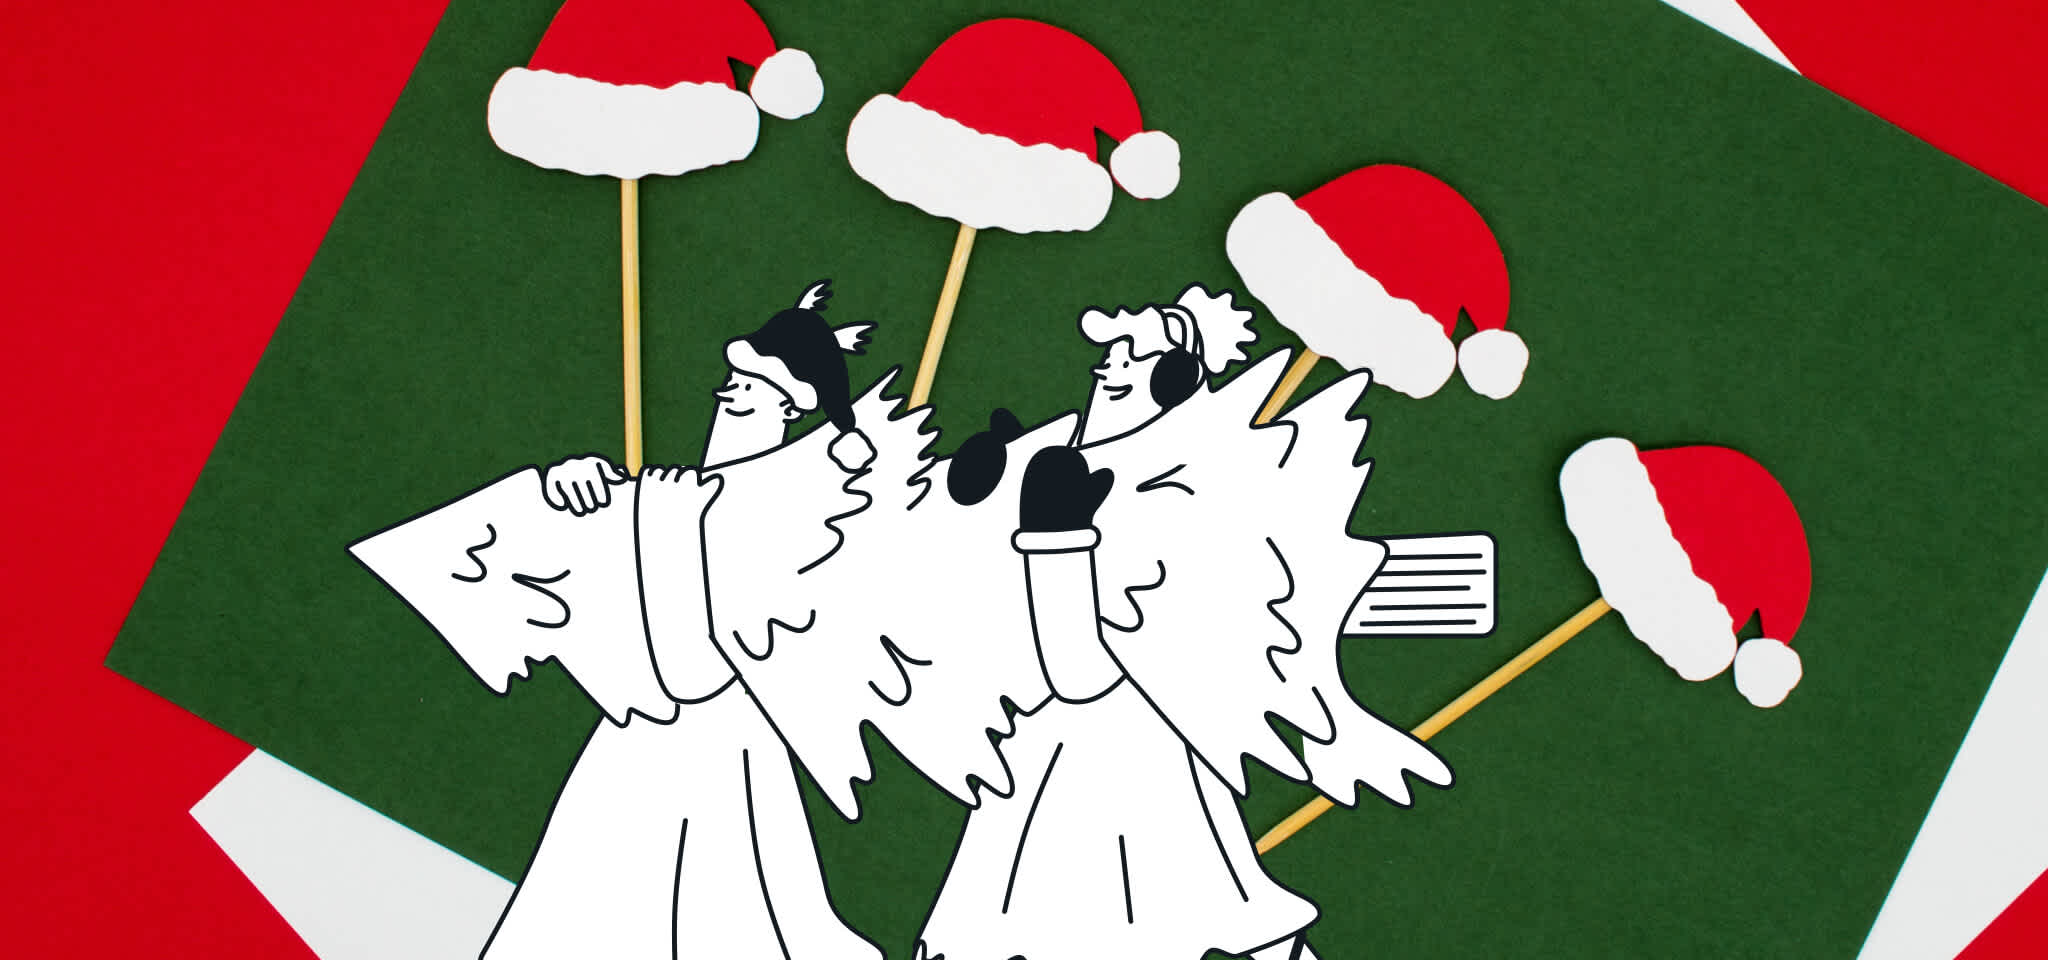 Hermes y una diosa cargan con un árbol de Navidad delante de unos sombreros de Santa